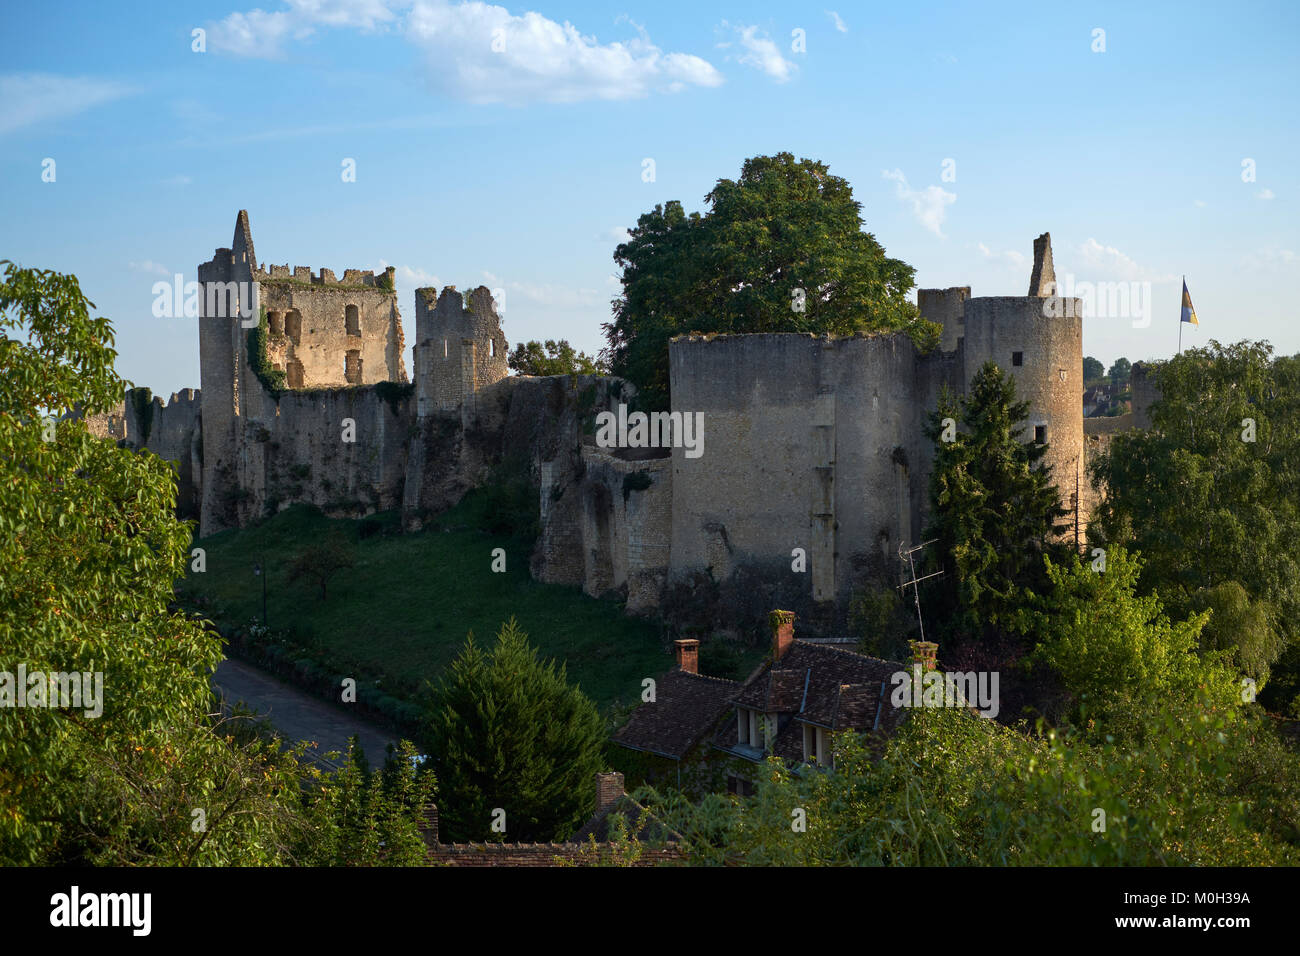 Les ruines du château d'Angles sur l'Anglin à Vienne France - un des plus beaux villages de France. Banque D'Images